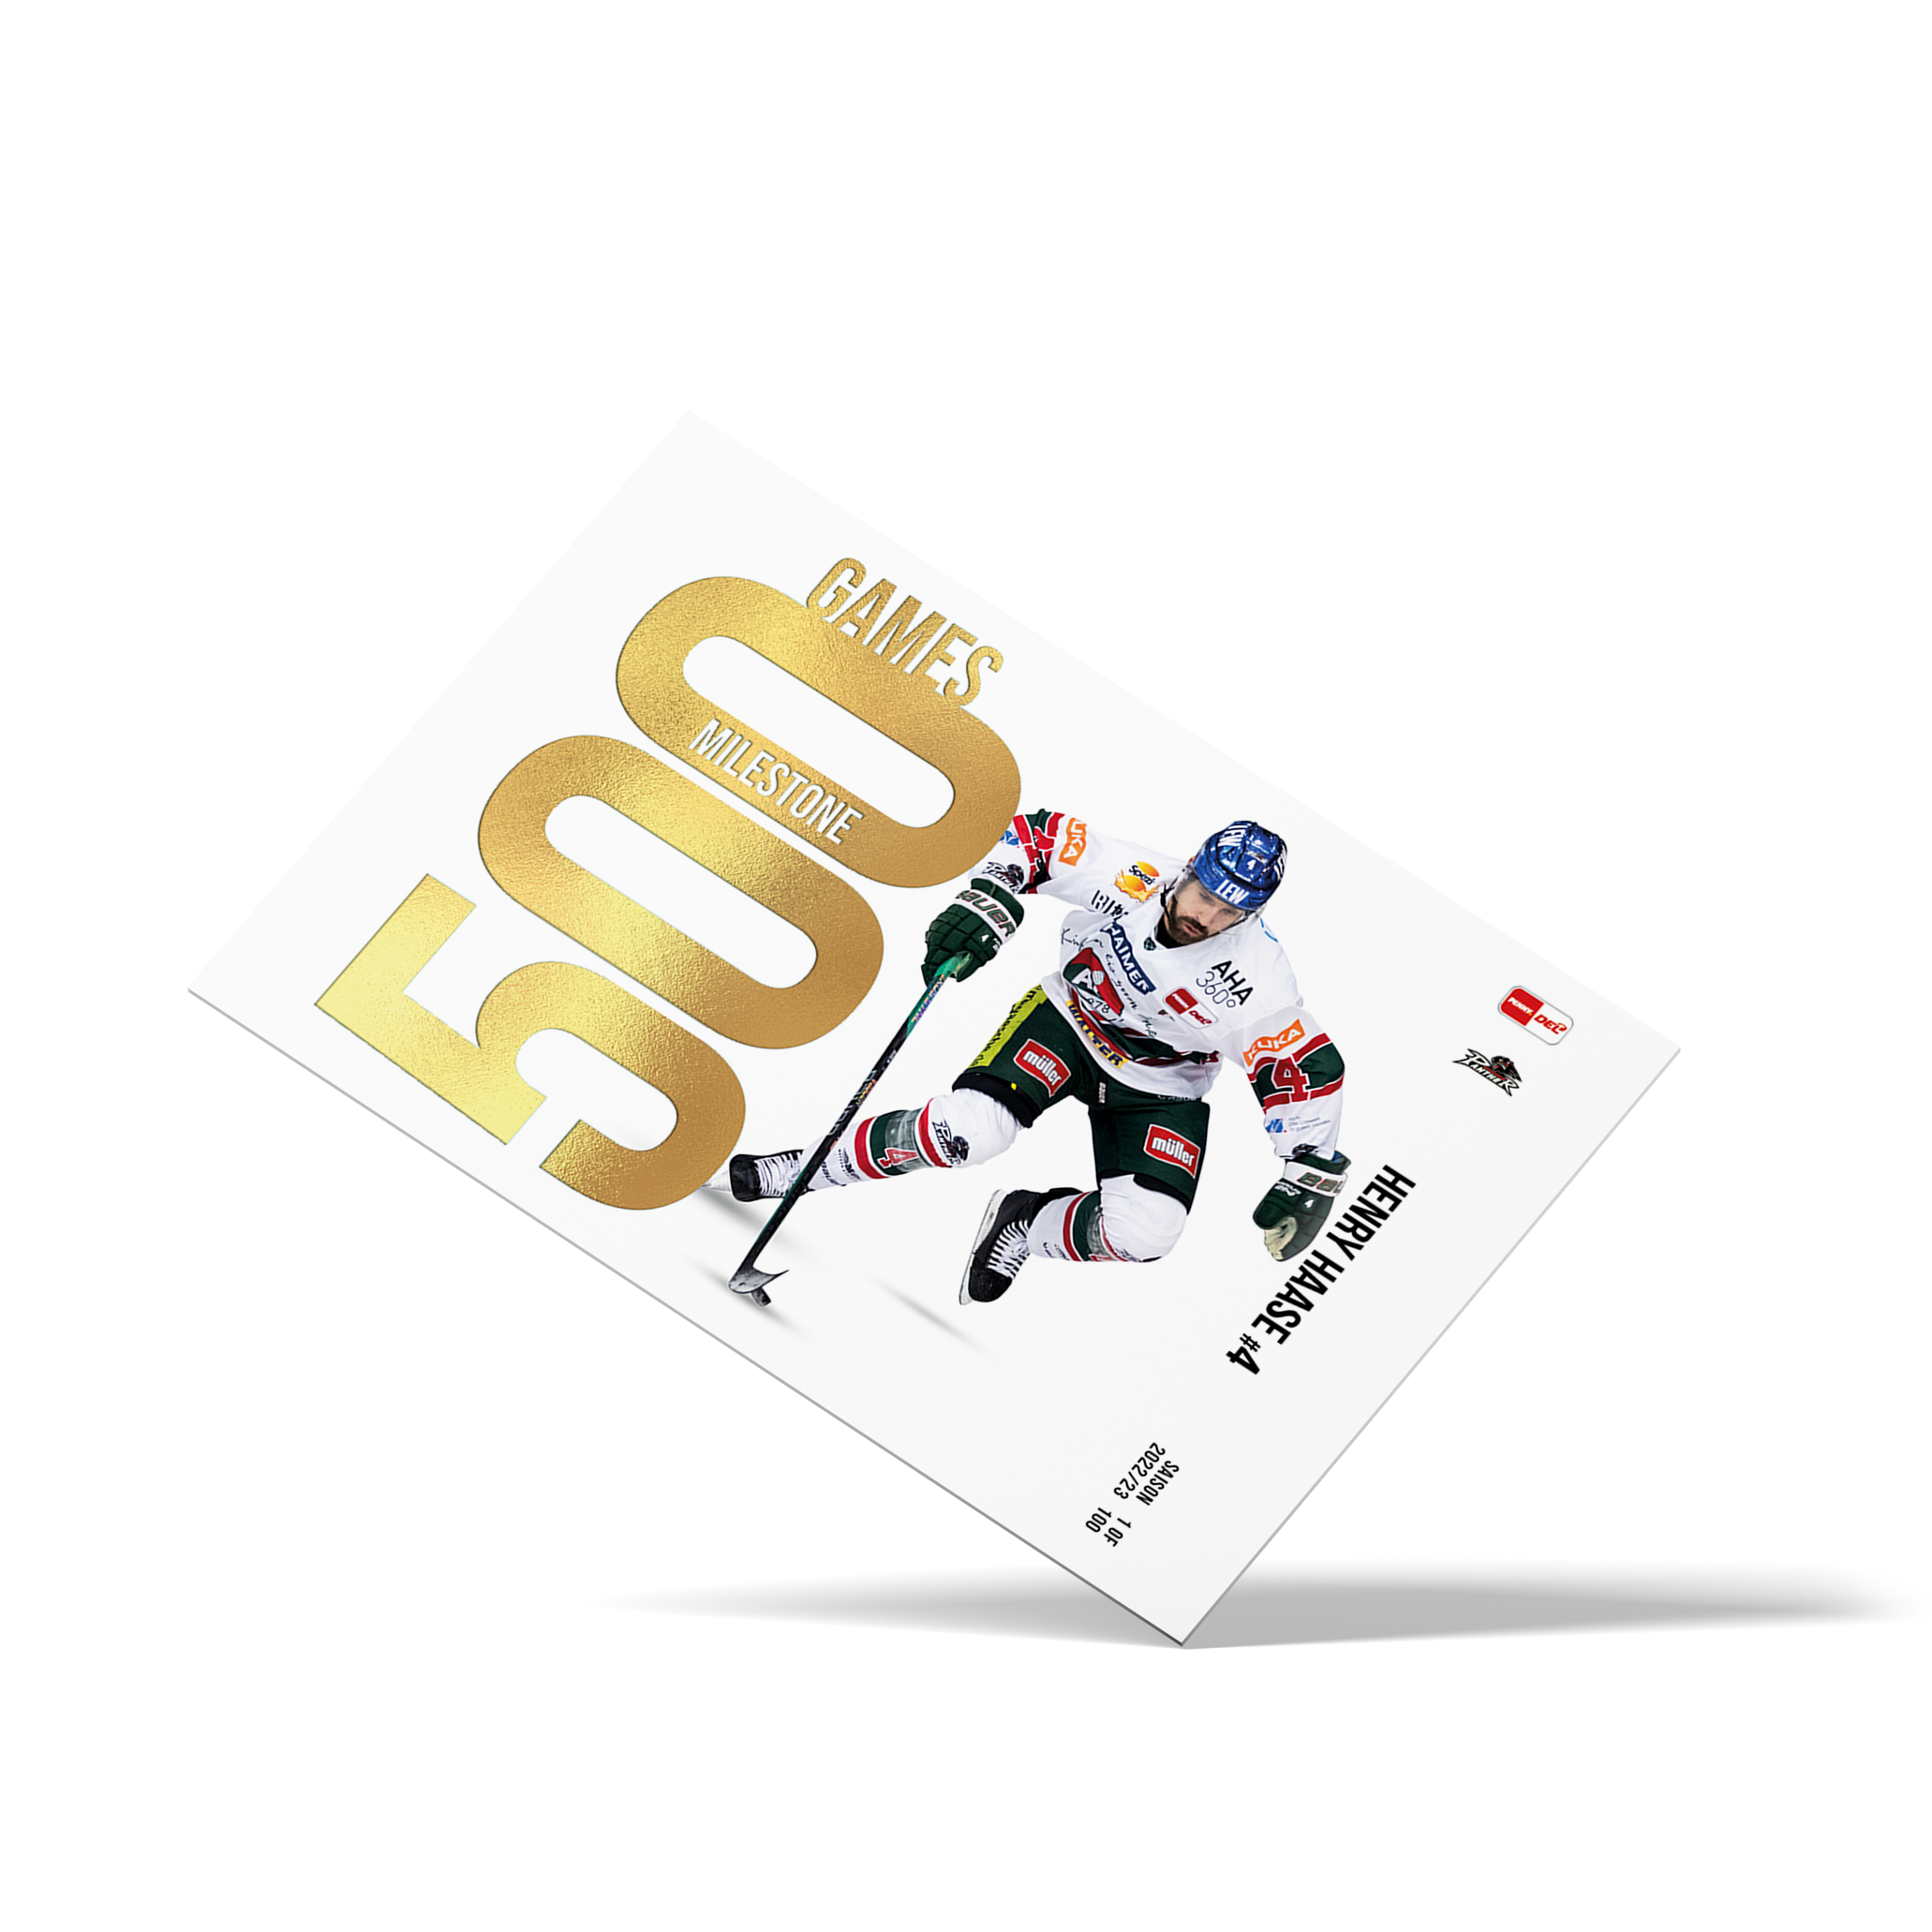 MILESTONE - 500 Games - Henry Haase